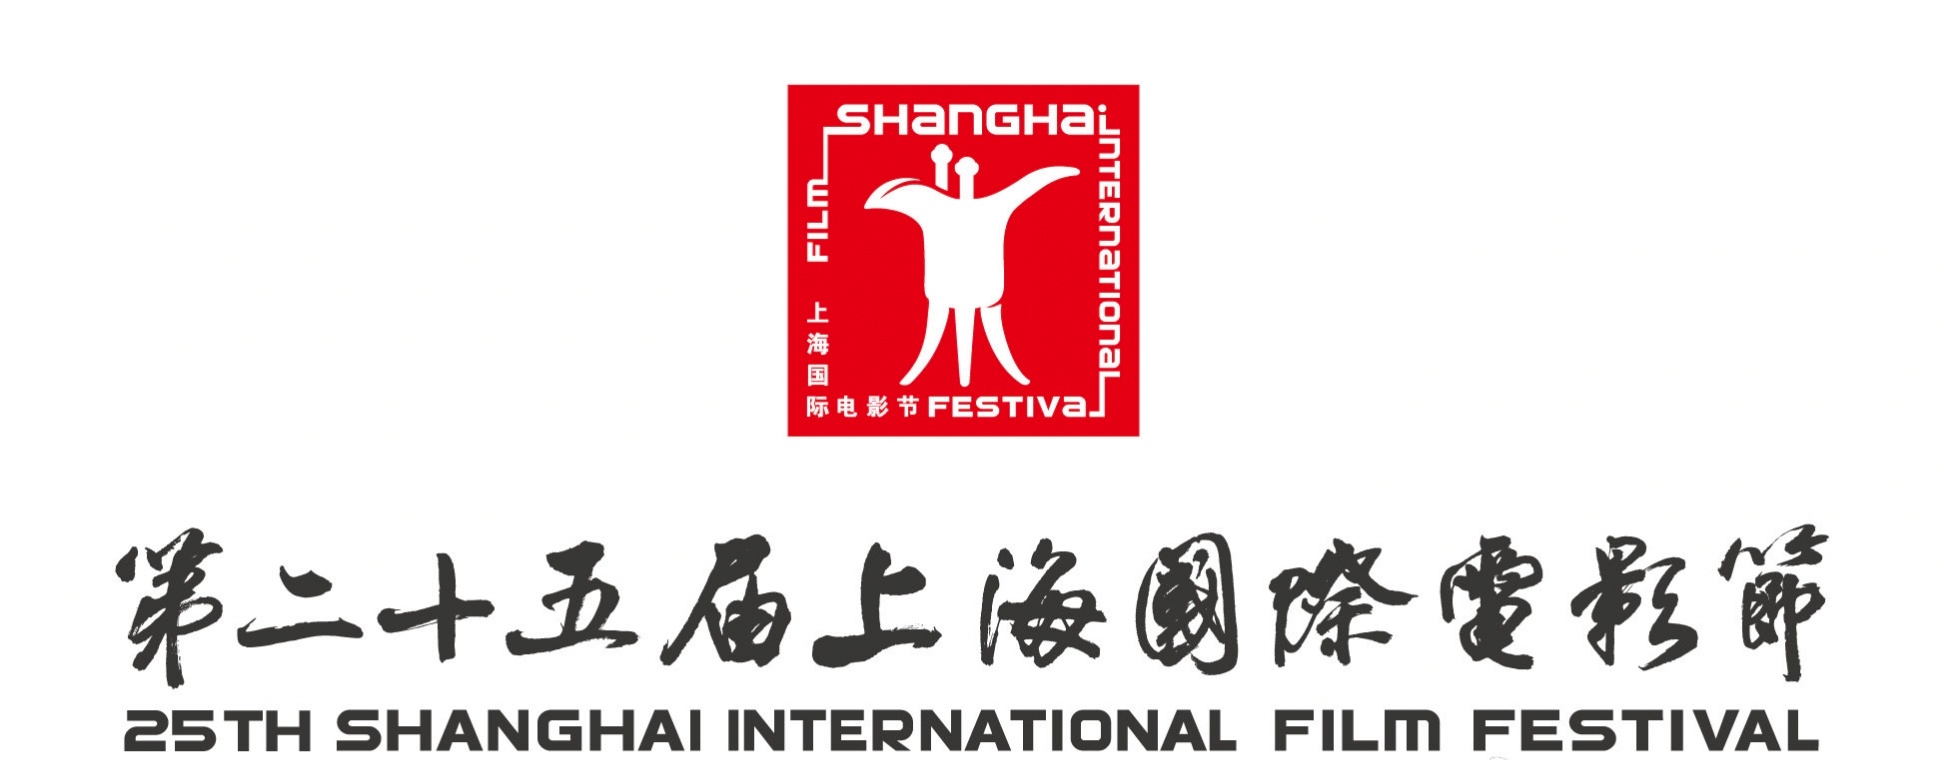 第25届上海国际电影节顺延至明年举办